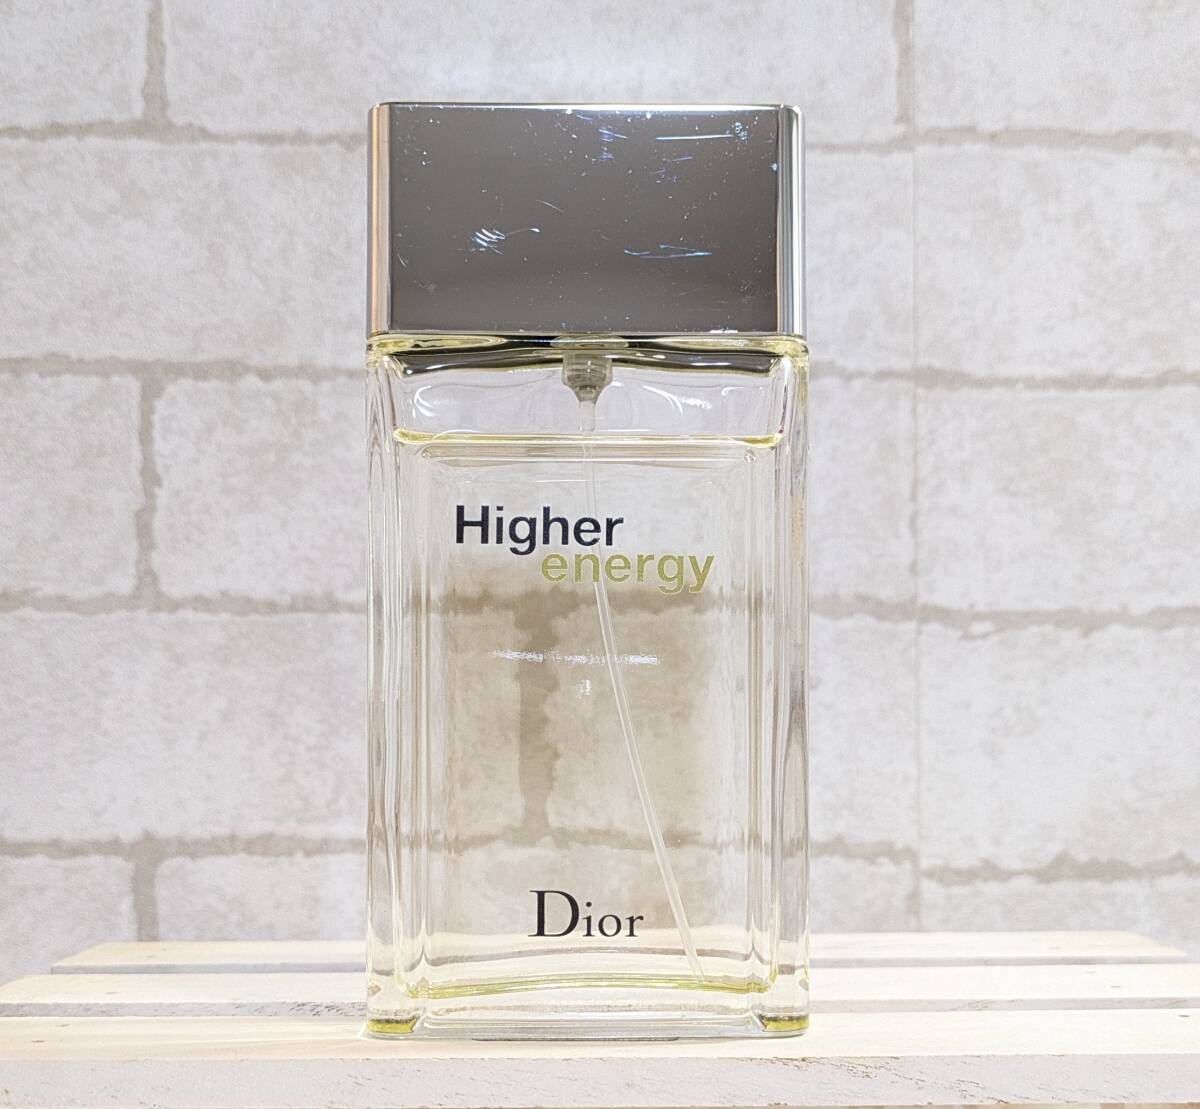  японский язык надпись есть 100ml Dior - year Energie o-doto трещина 